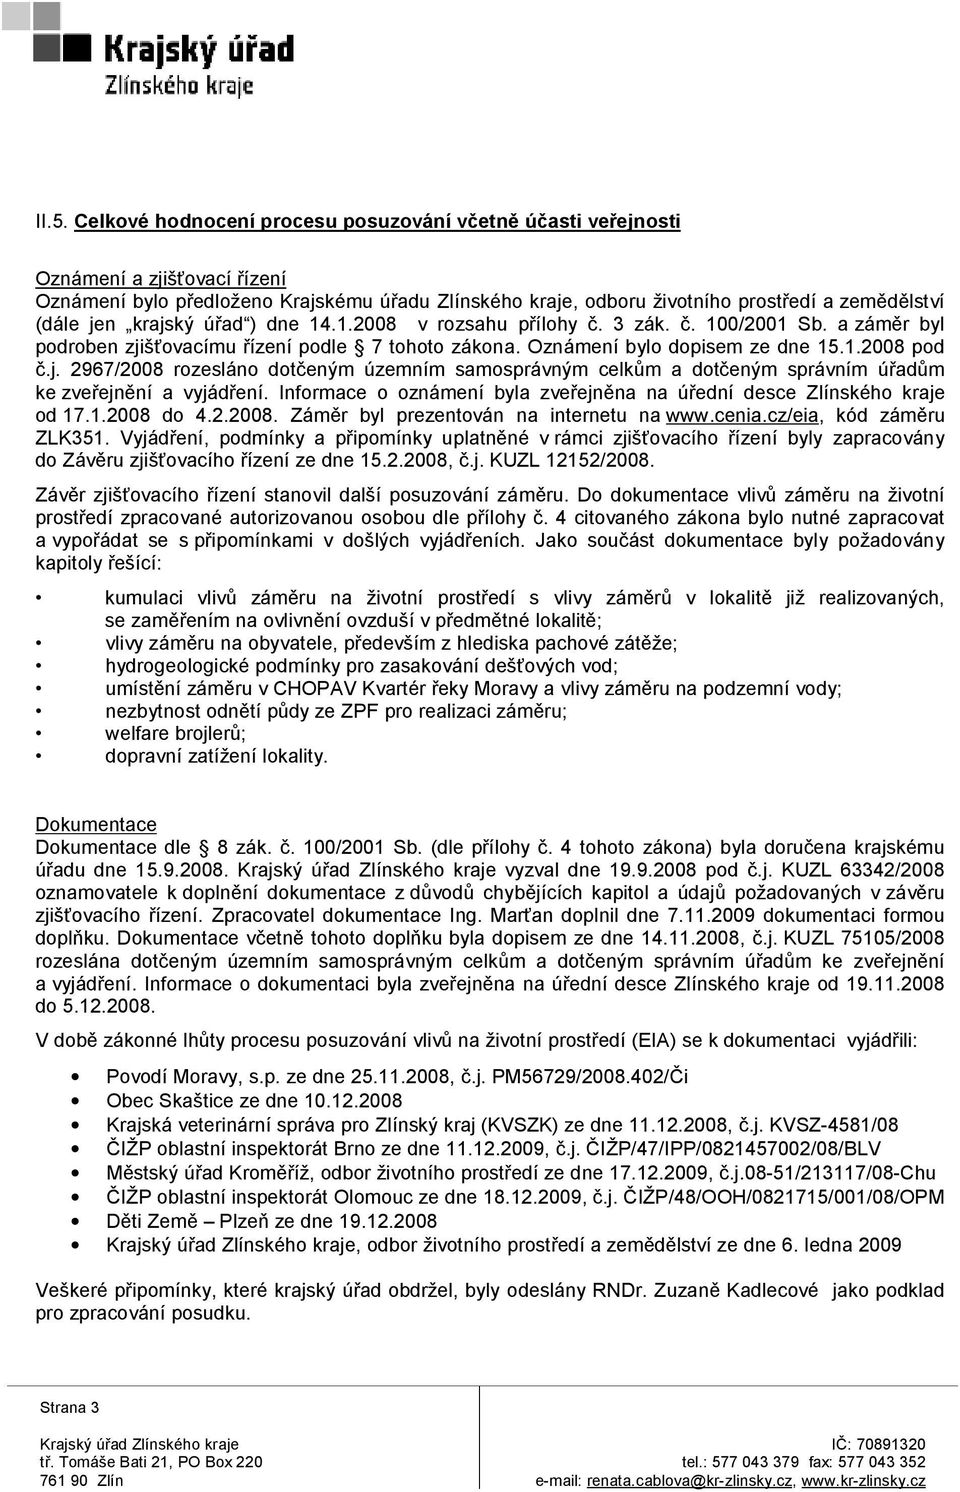 Informace o oznámení byla zveřejněna na úřední desce Zlínského kraje od 17.1.2008 do 4.2.2008. Záměr byl prezentován na internetu na www.cenia.cz/eia, kód záměru ZLK351.